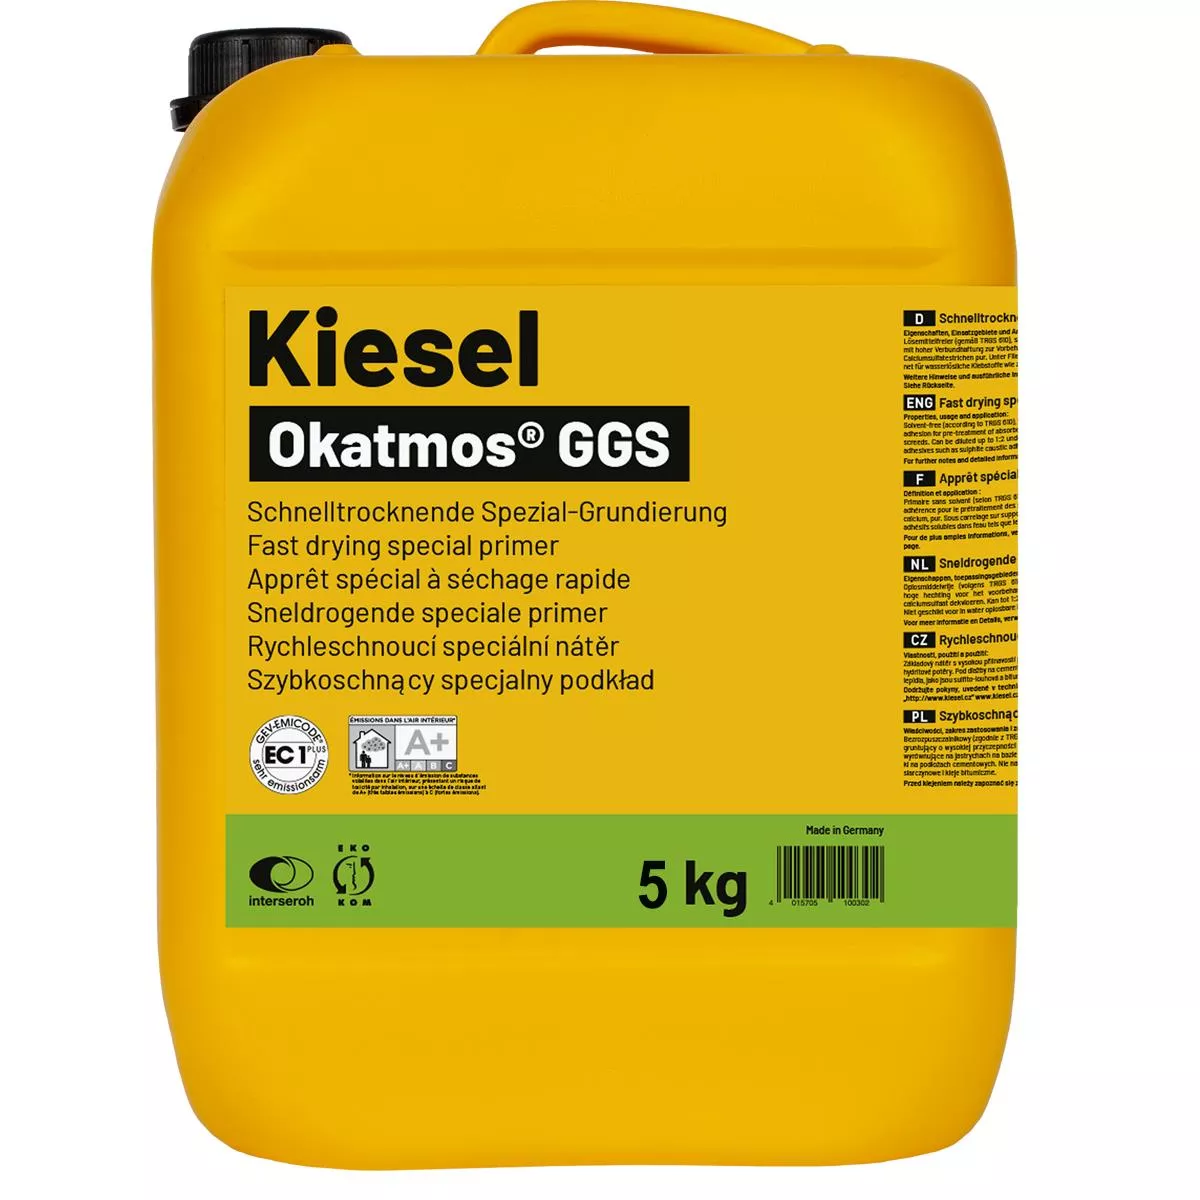 Specialprimer Okatmos GGS 5 kg